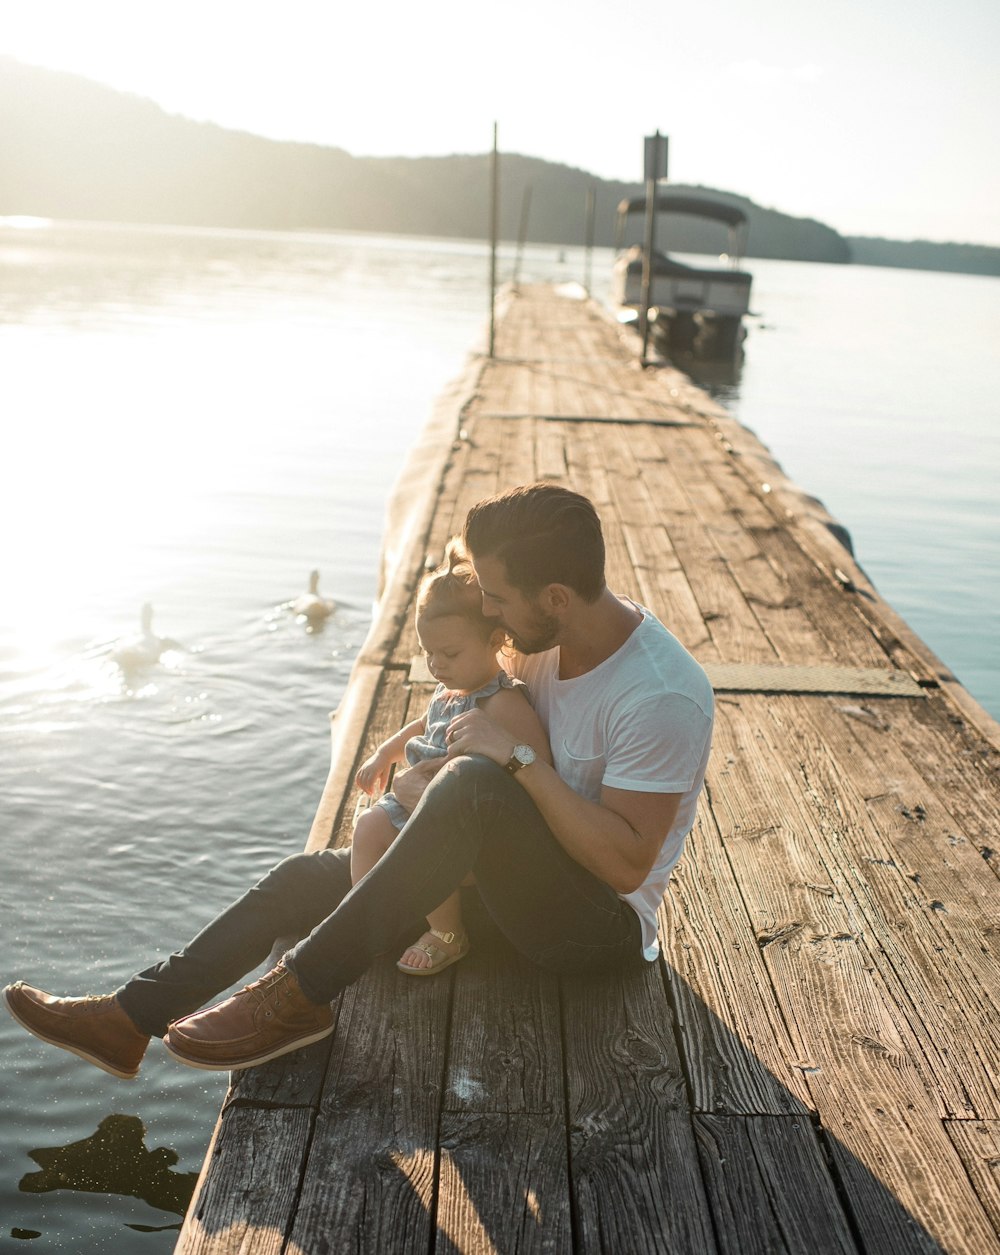 hombre y niña sentados en un muelle marrón cerca del barco y dos patos blancos durante el día